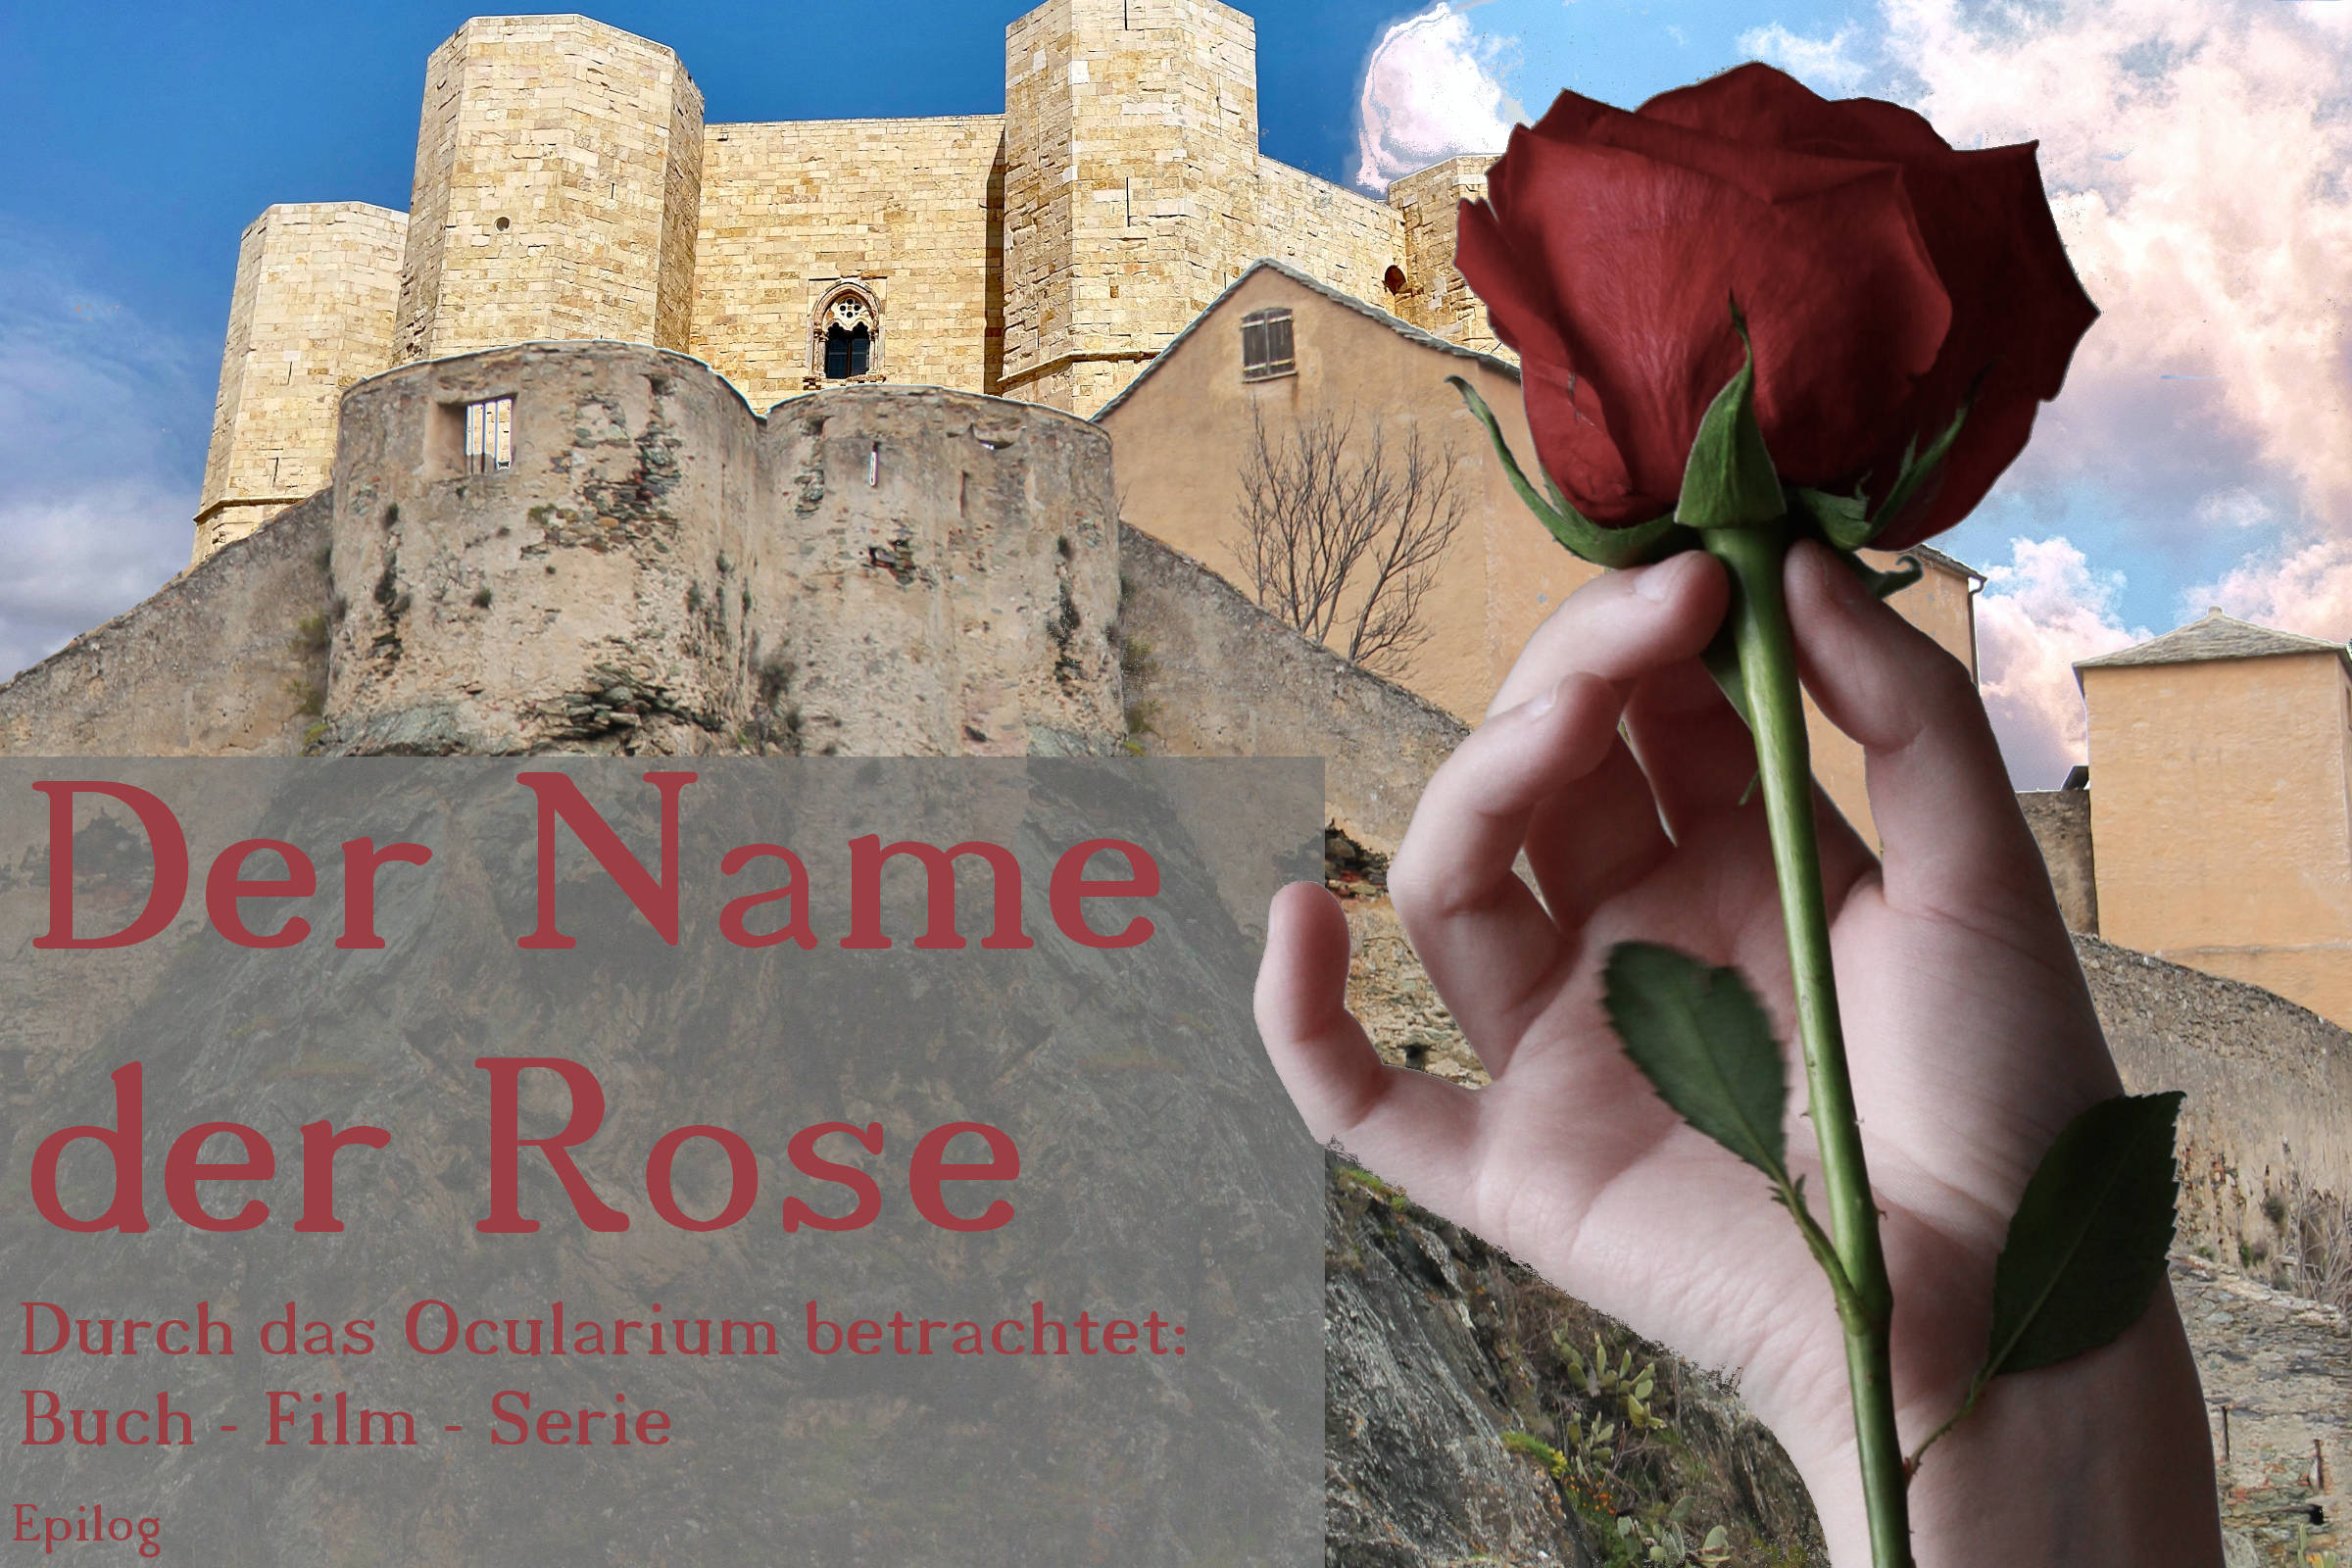 Der Name der Rose – Durch das Ocularium betrachtet: Buch – Film – Serie | Epilog